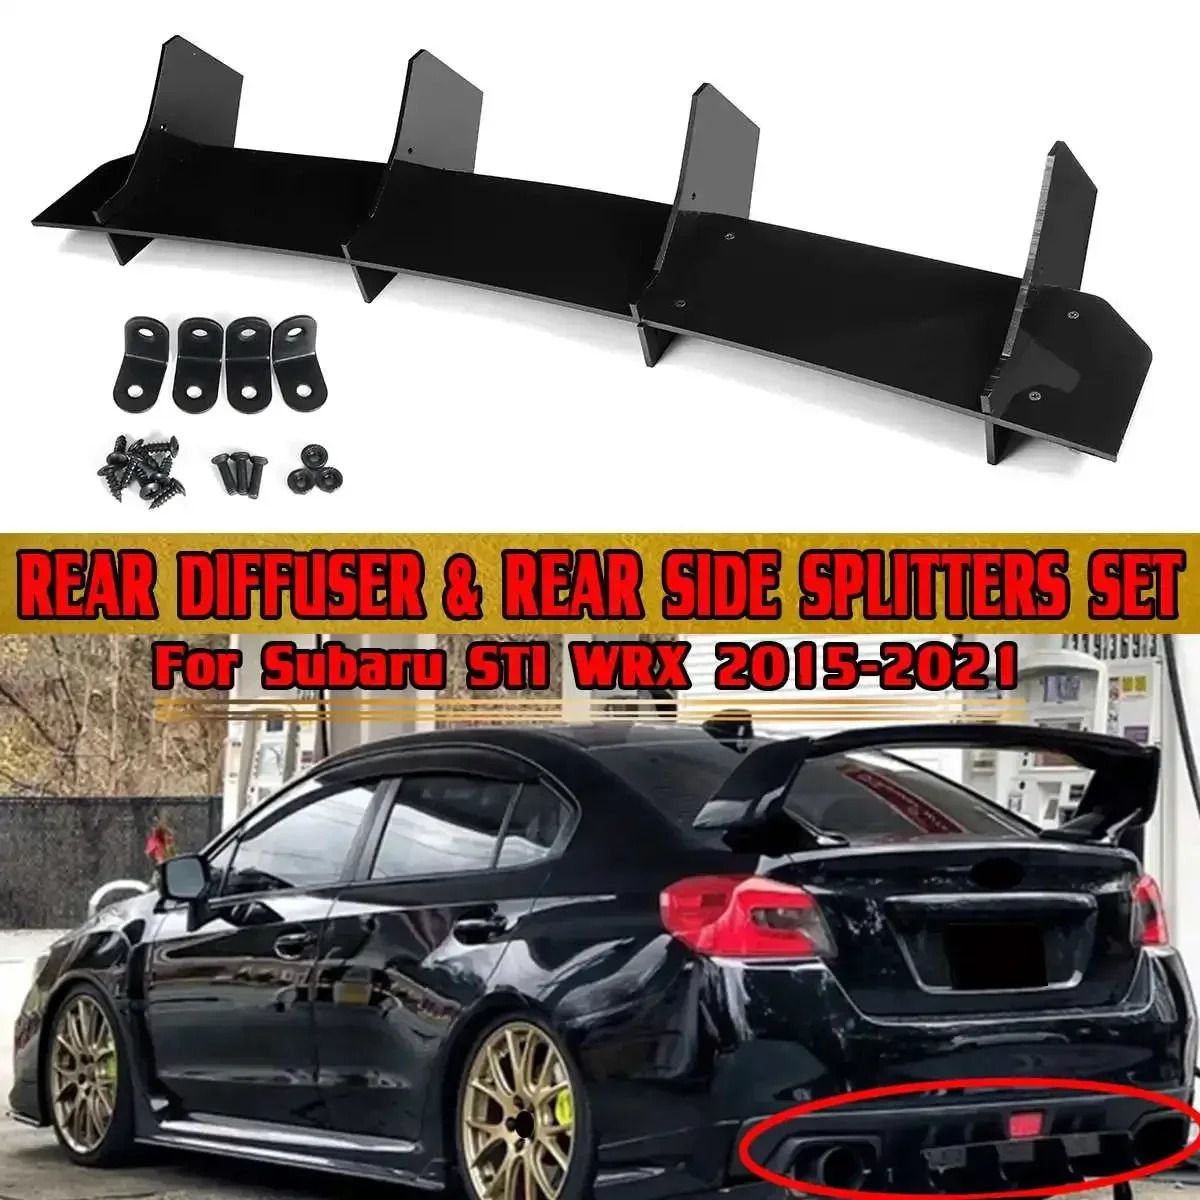 

ABS Car Rear Bumper Diffuser Lip Rear Side Splitters Lip For Subaru STI WRX 2015-2021 Rear Bumper Diffuser Protector Body Kit